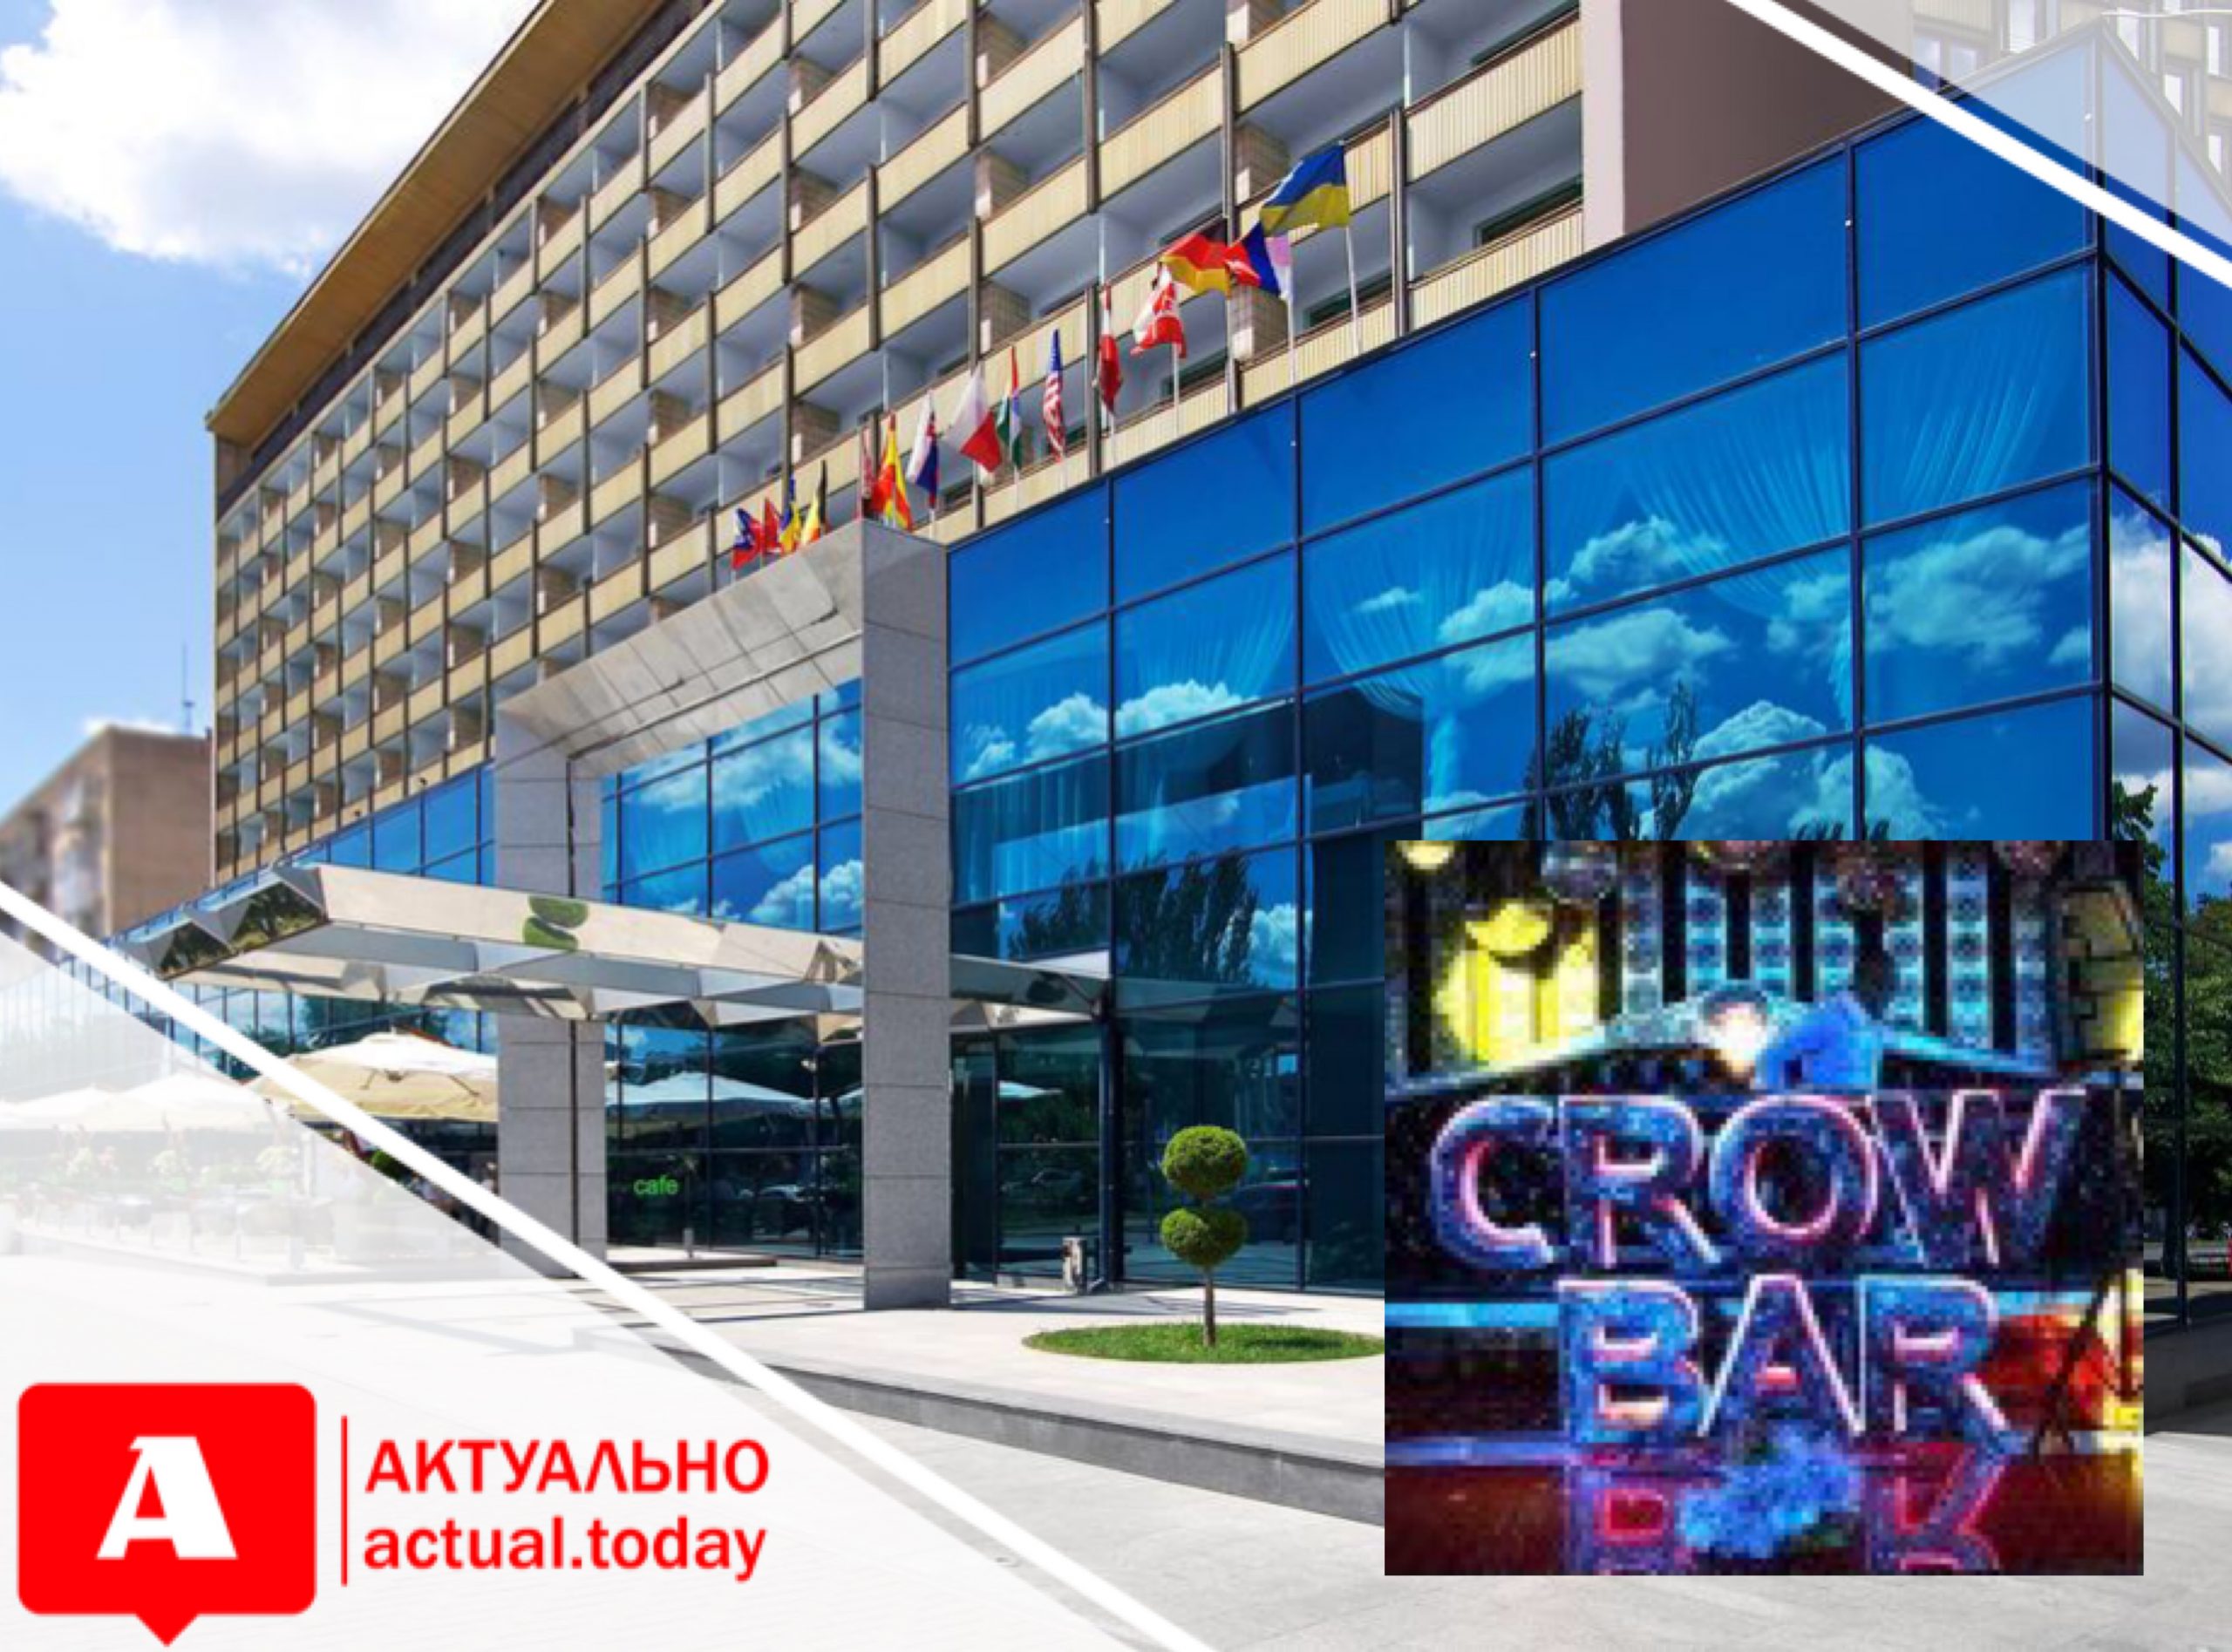 Сеть казино “Slots city” в ближайшее время получит лицензию на проведение азартных игр в запорожском “Интуристе” (ДОКУМЕНТ)